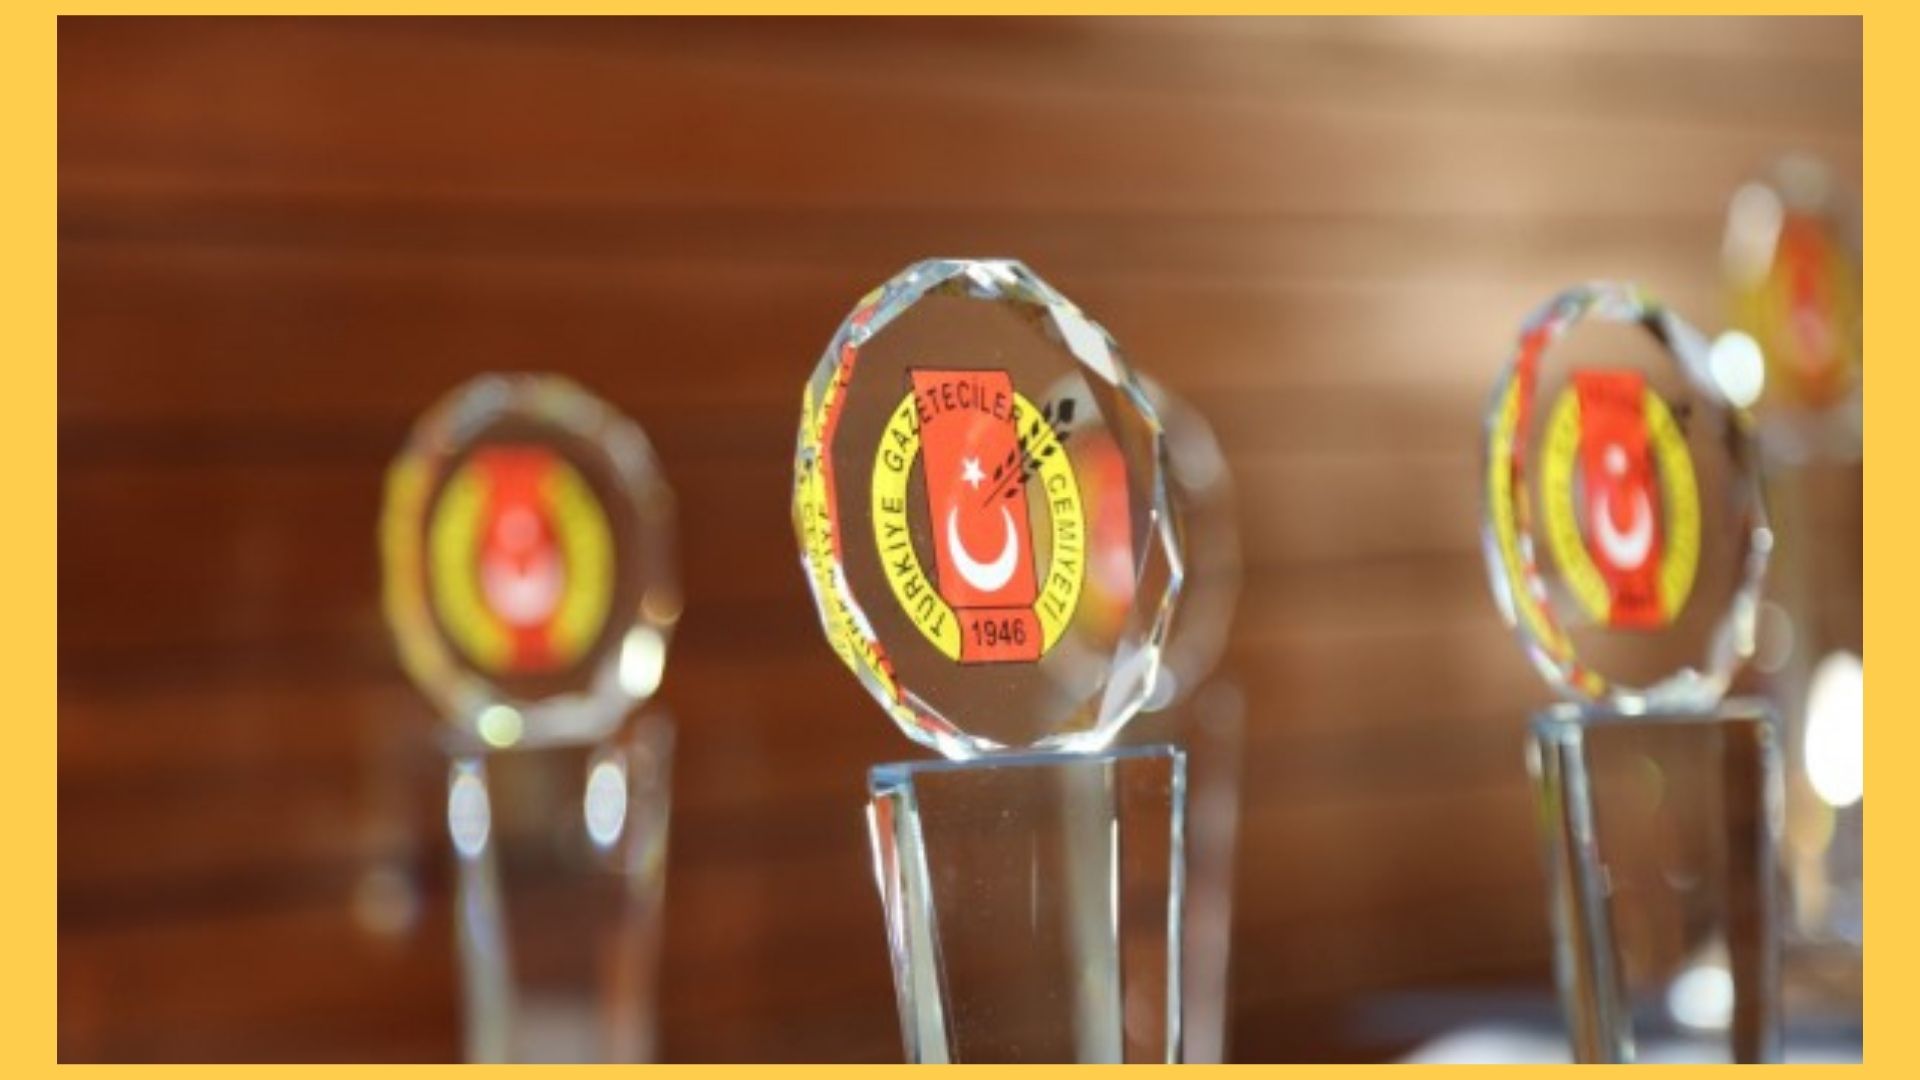 resimler-haber/Türk-gazeteciler-cemiyeti-ödülleri-açıklandı-moren-haber.jpg